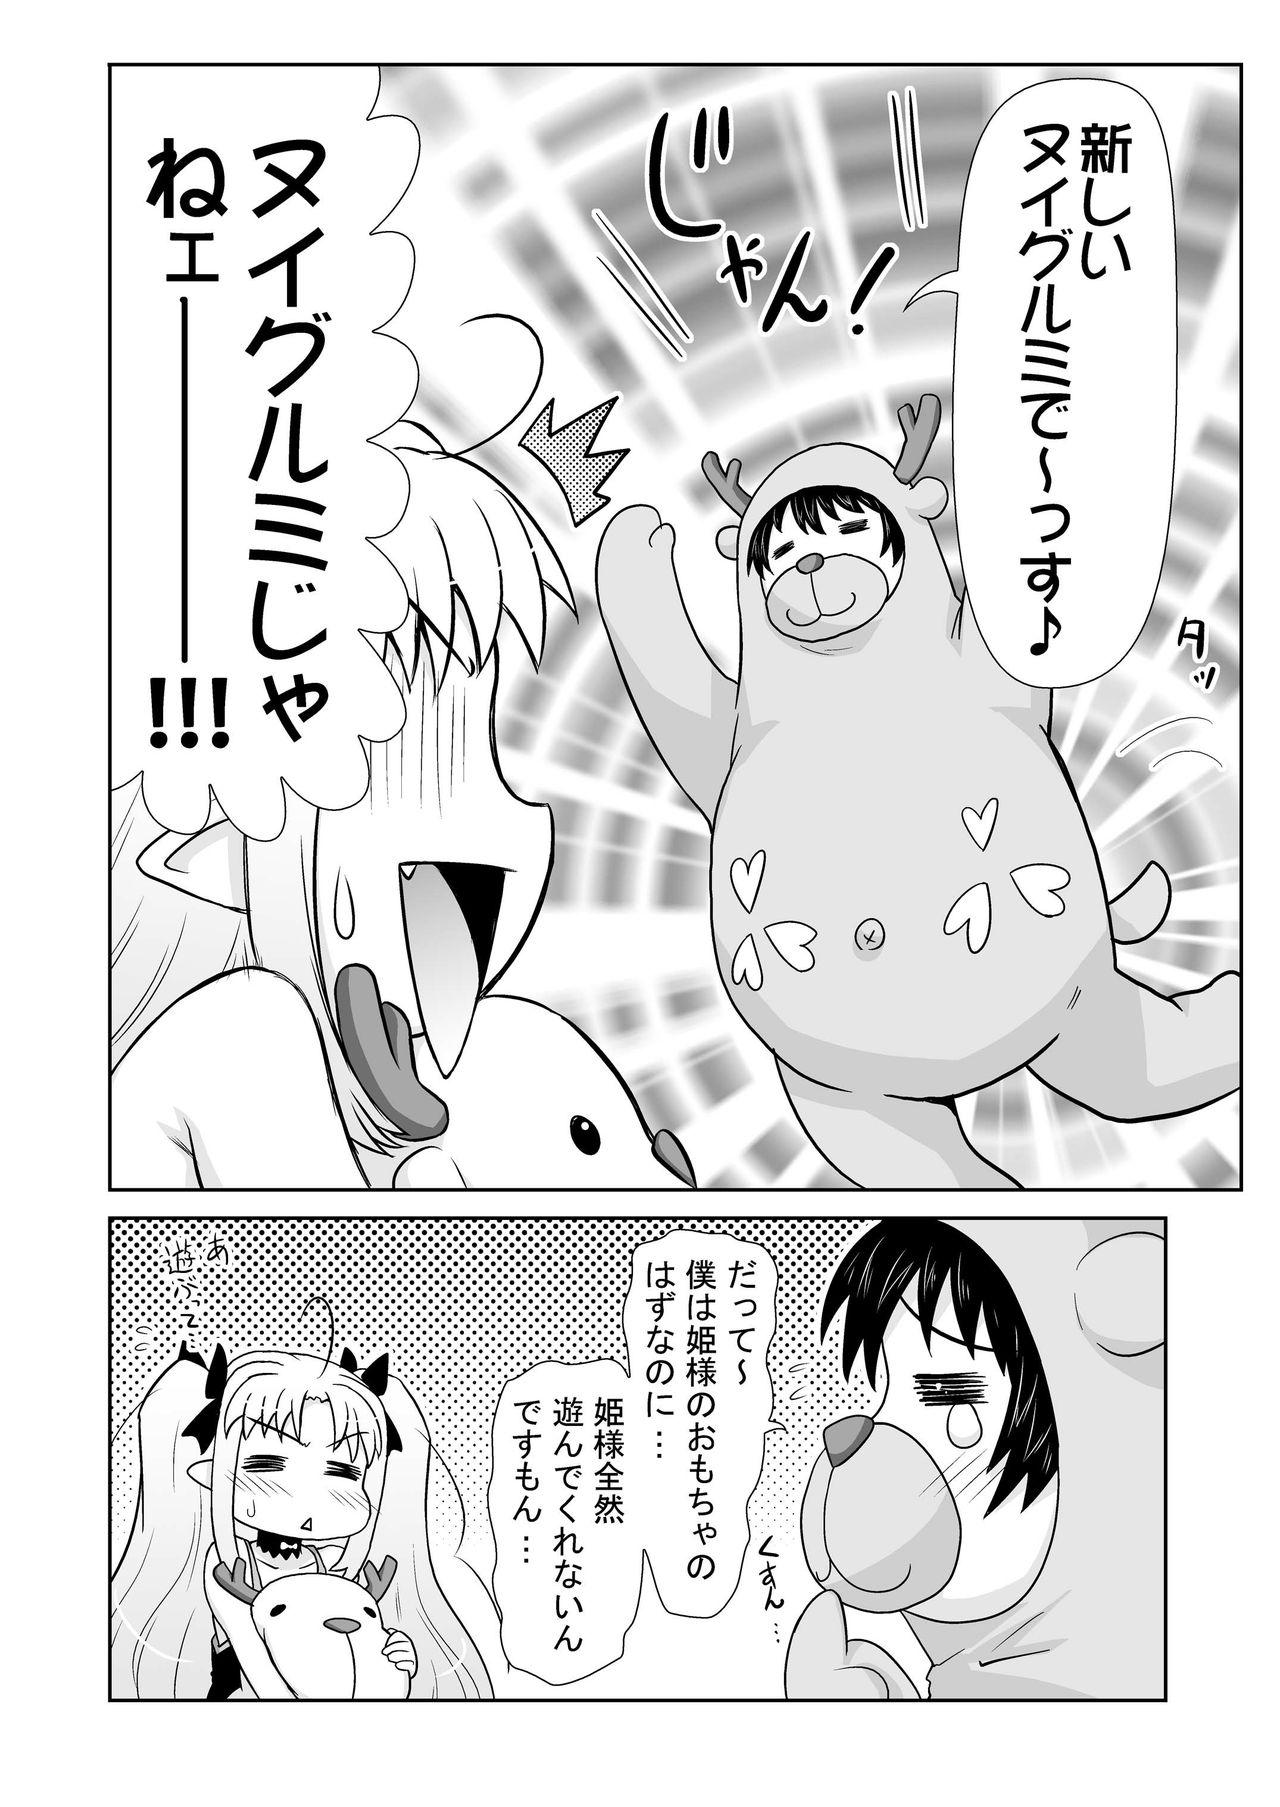 Argenta Boku wa Lotte-sama no Omocha desu ga, Nani ka? - Lotte no omocha Pretty - Page 6